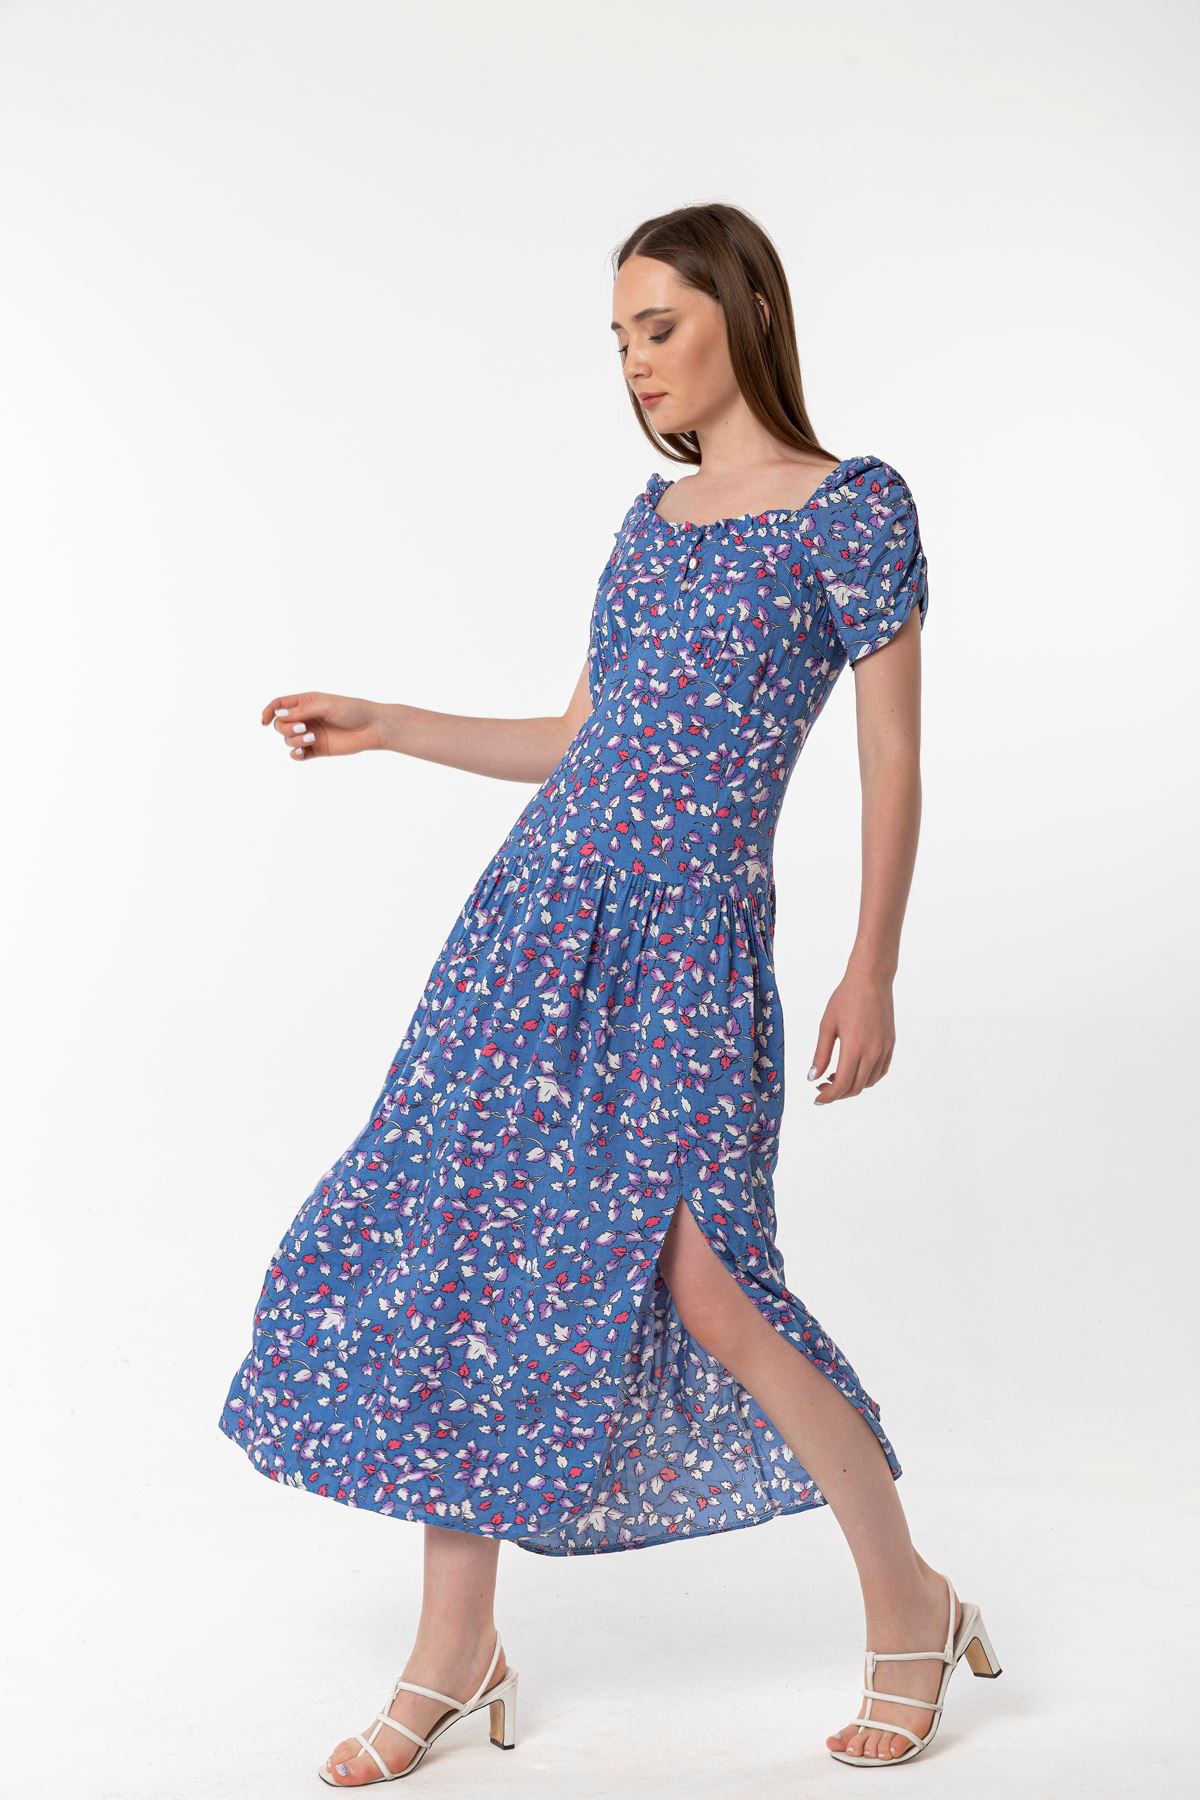 Empirme Kumaş Kare Yaka Çiçek Desen Büzgü Detay Kadın Elbise-Mavi